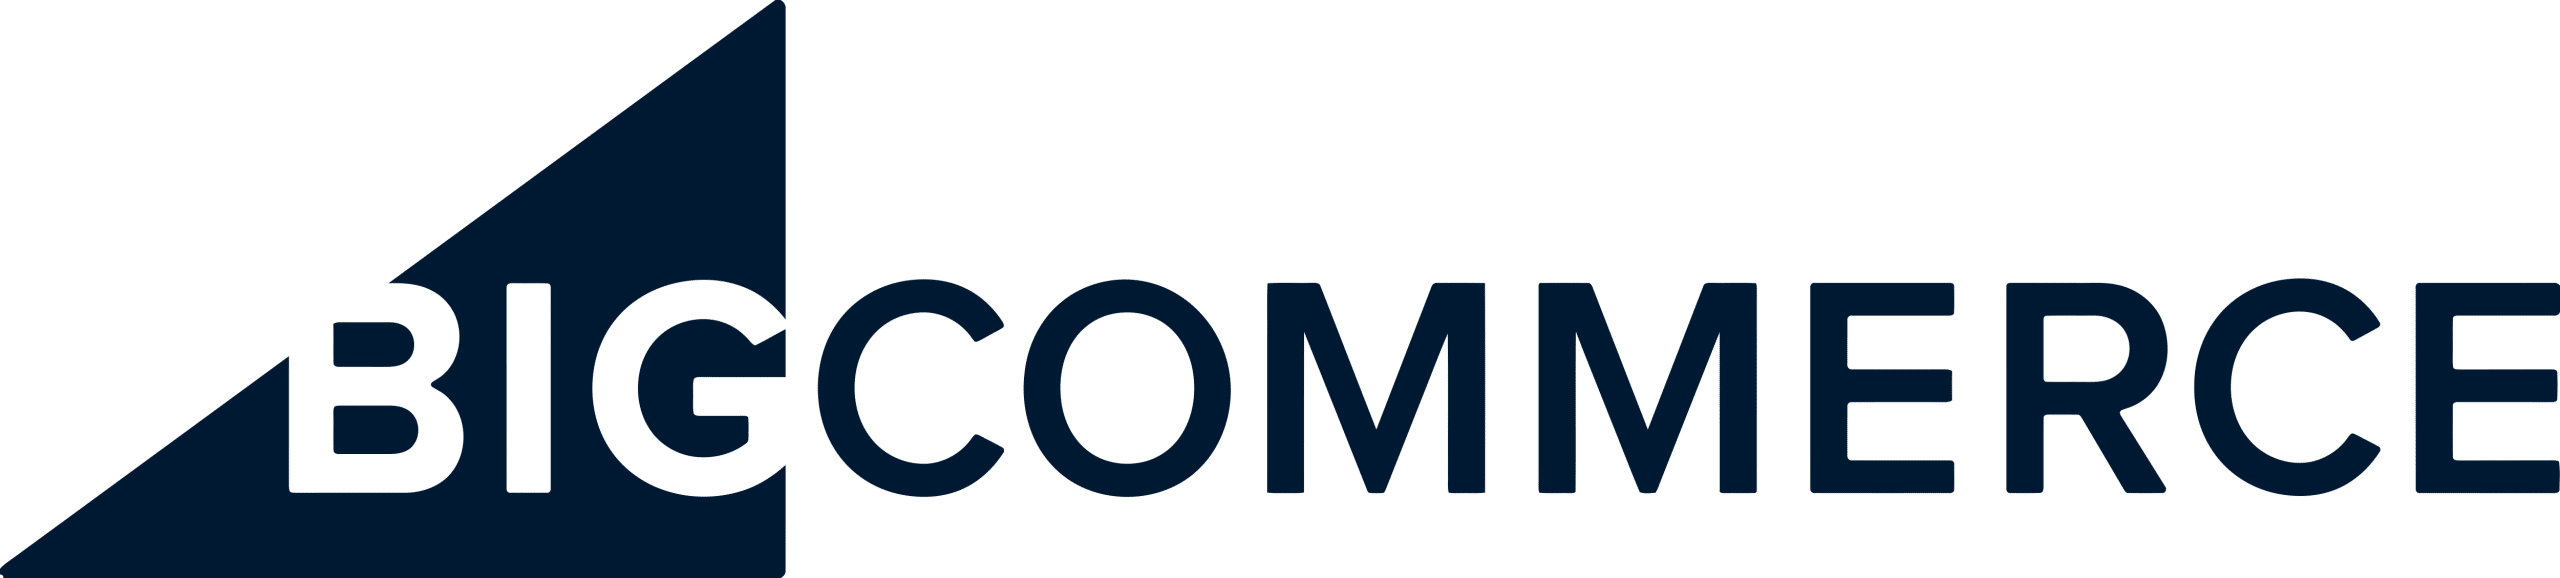 Big Commerce DB logo